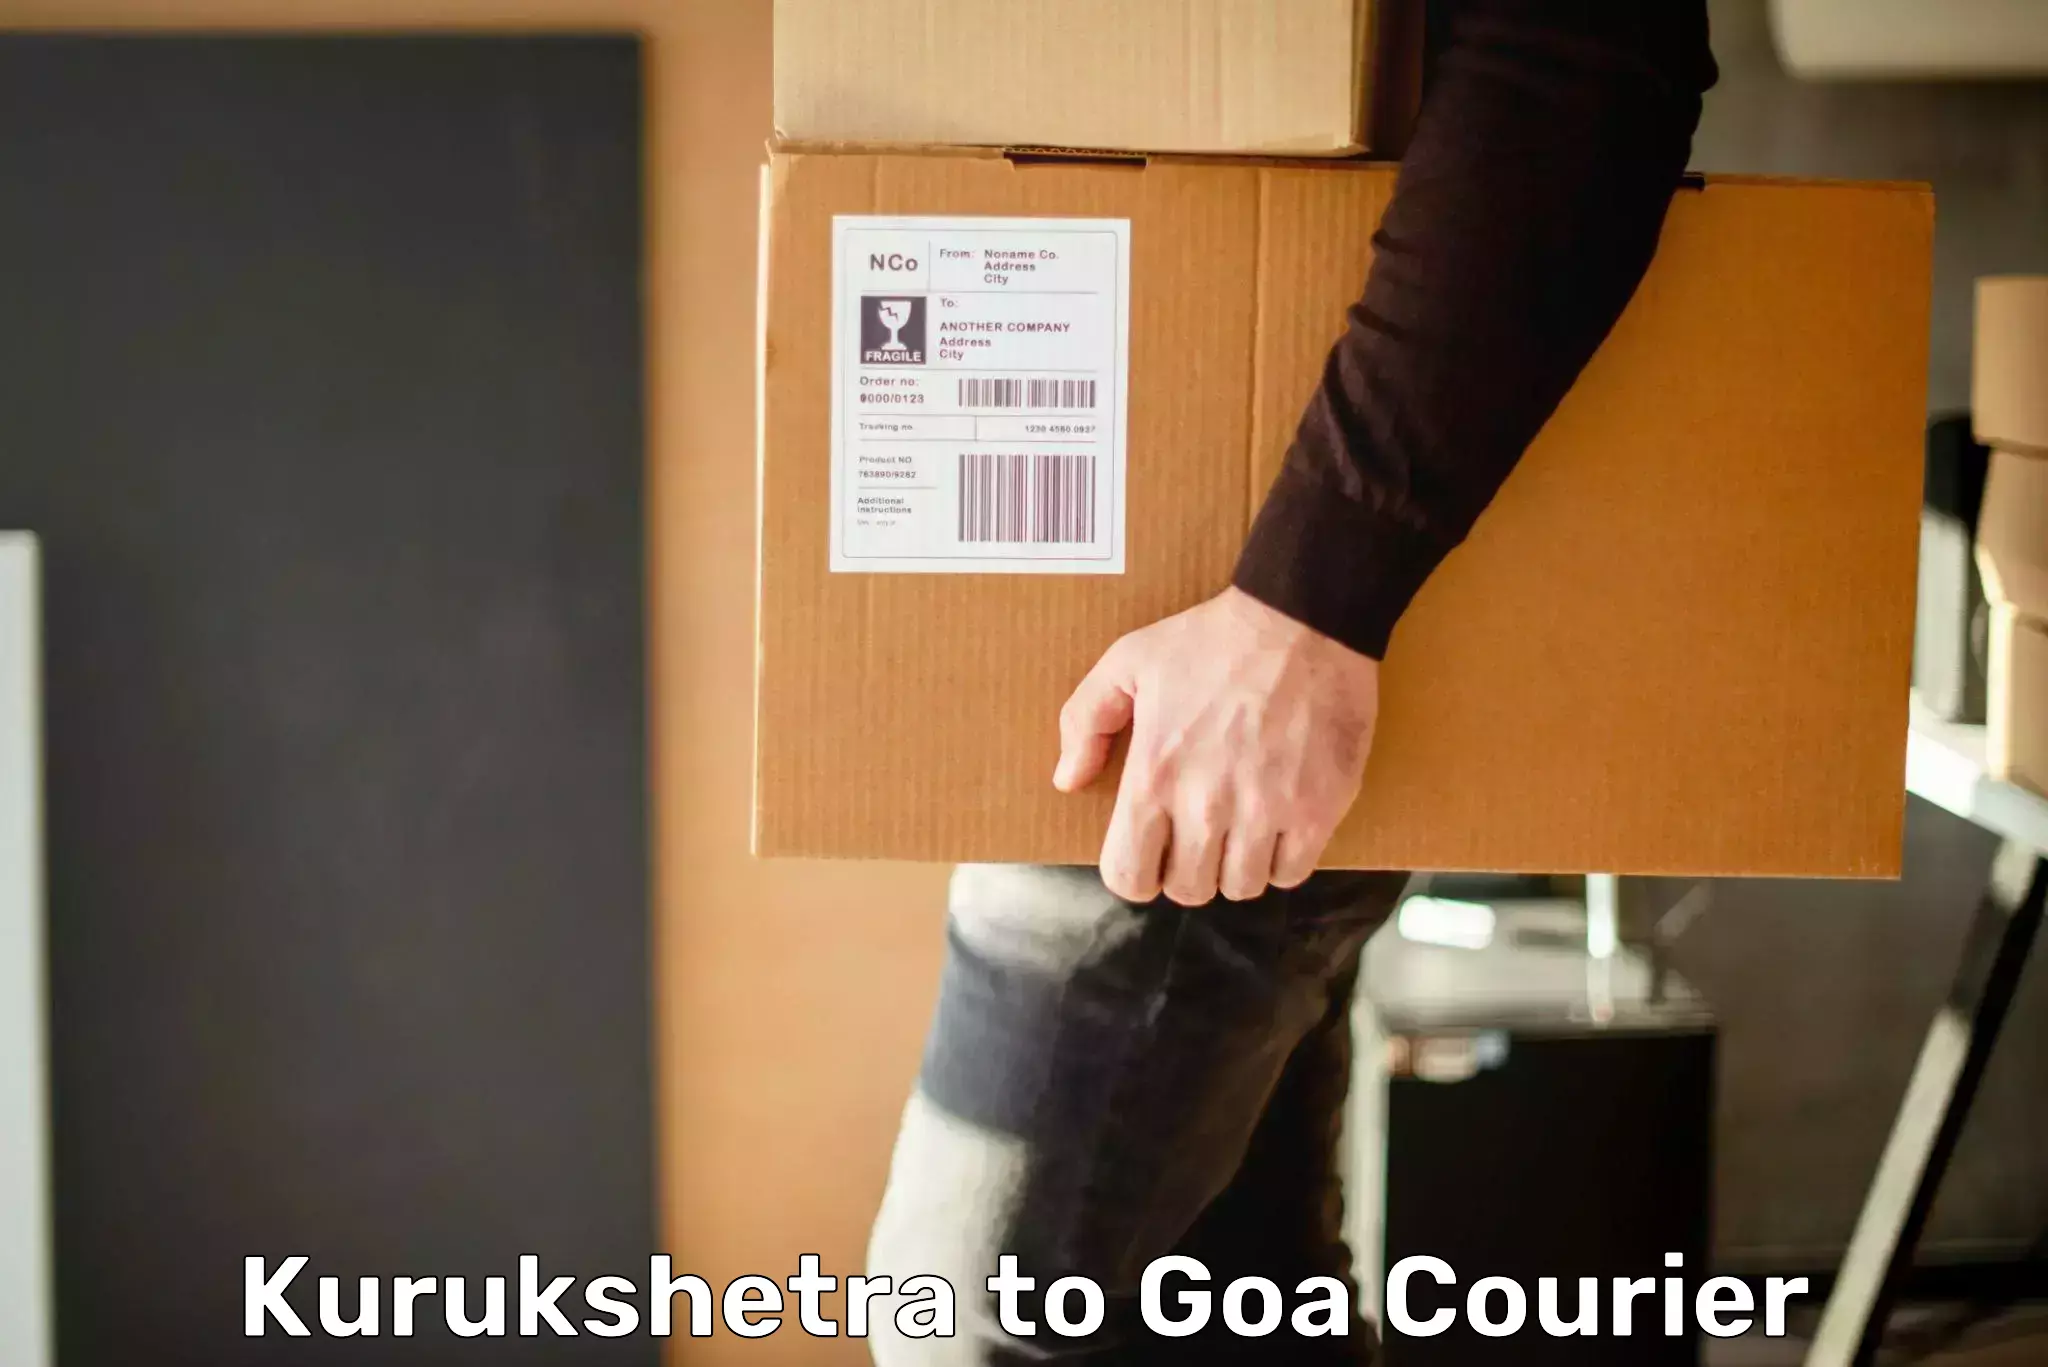 State-of-the-art courier technology Kurukshetra to Vasco da Gama